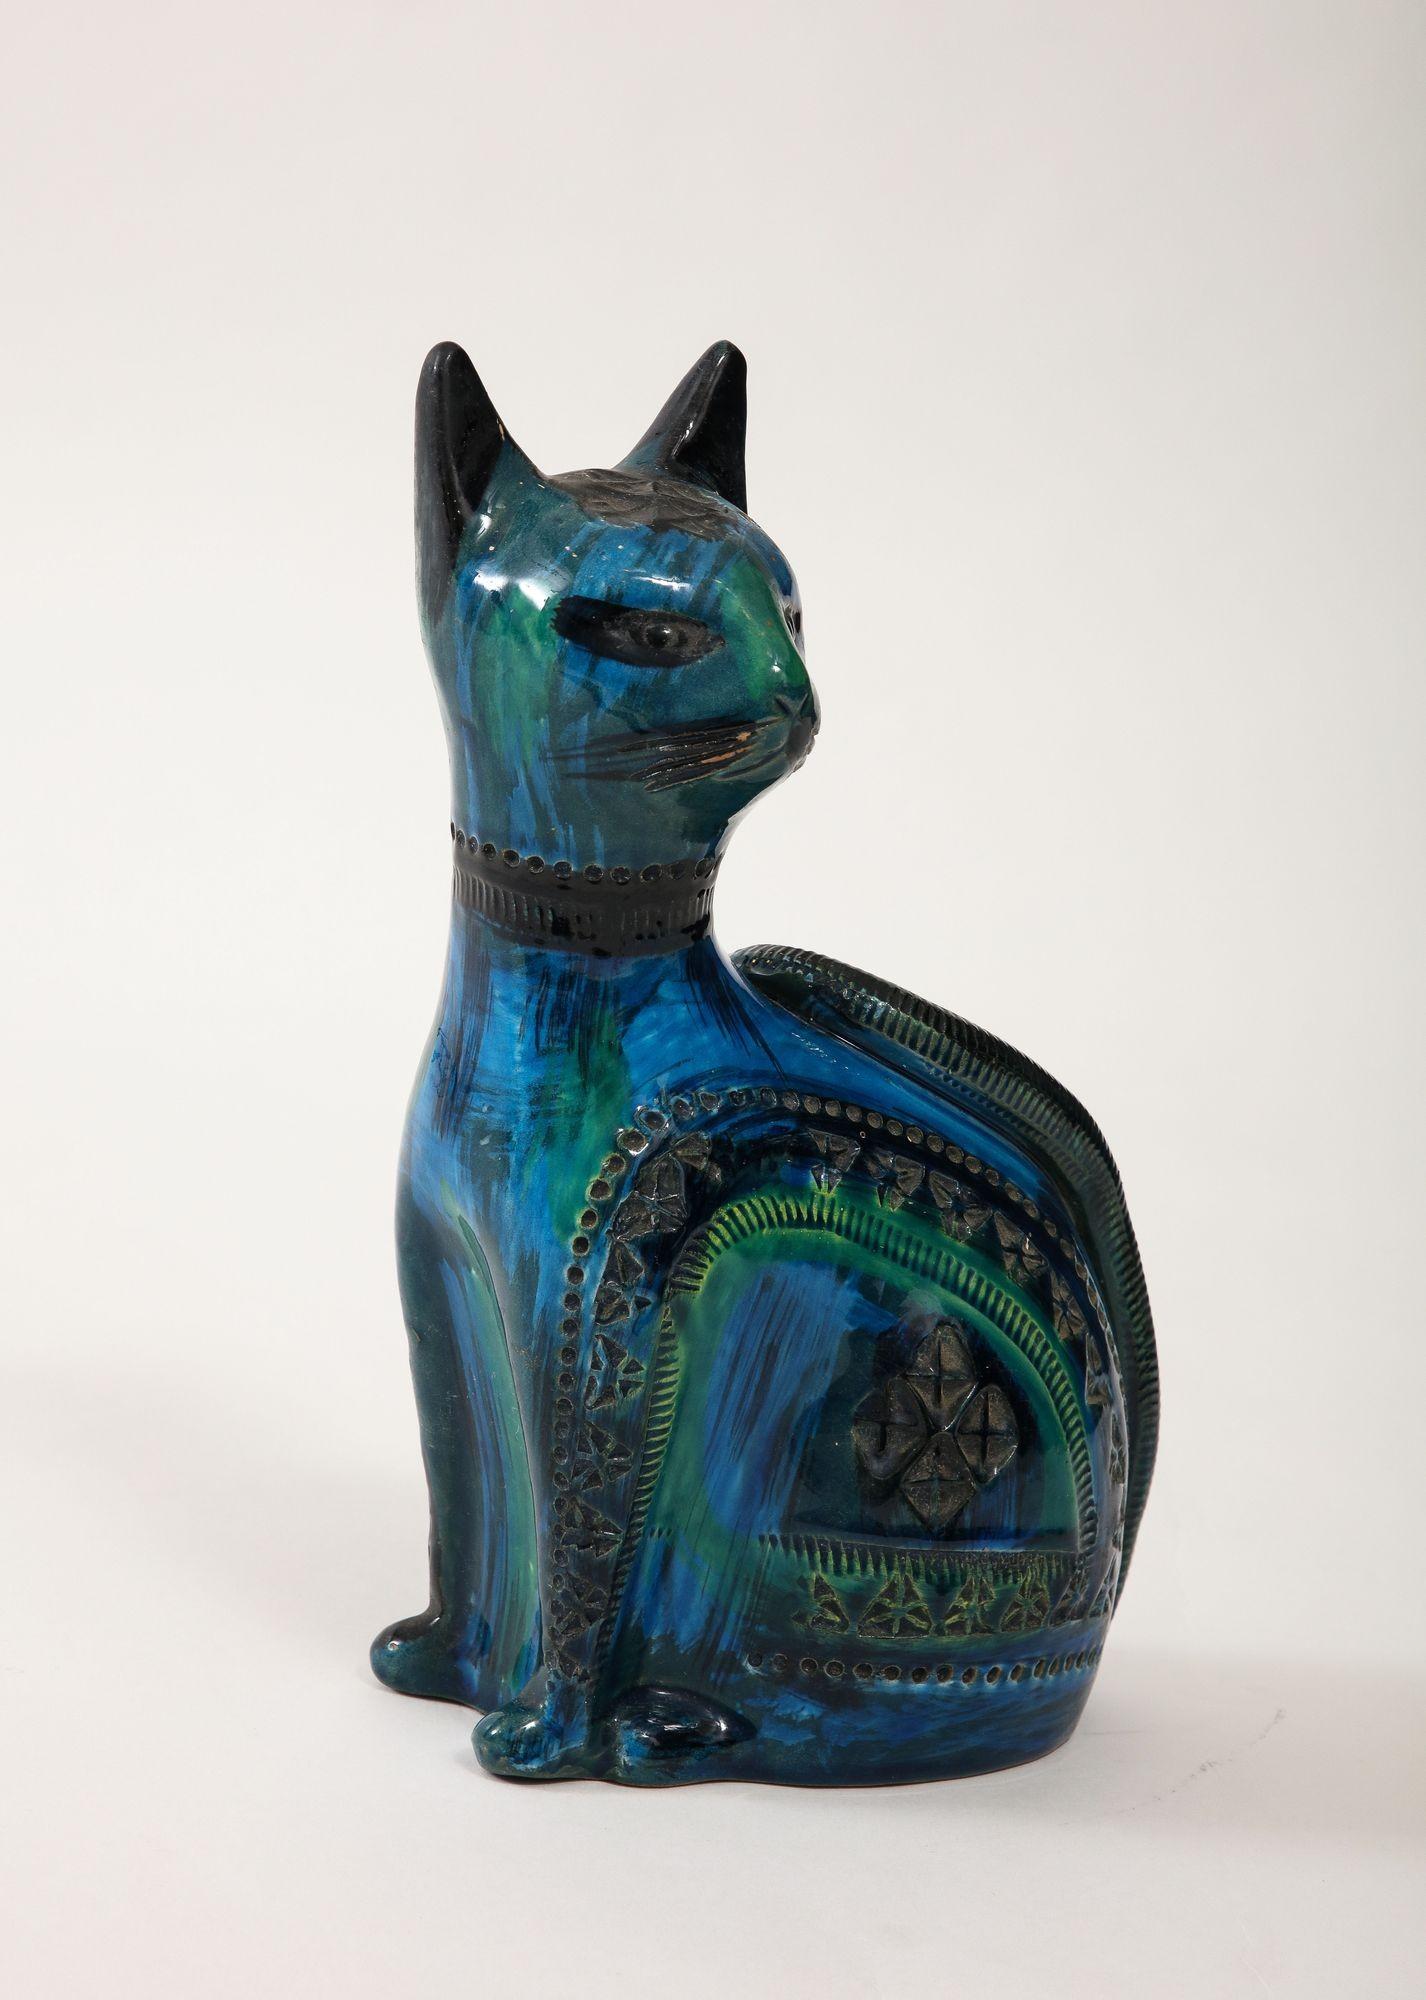 Ceramic Cat by Aldo Londi for Bitossi in 'Rimini blue' Italy Ca. 1960 For Sale 1